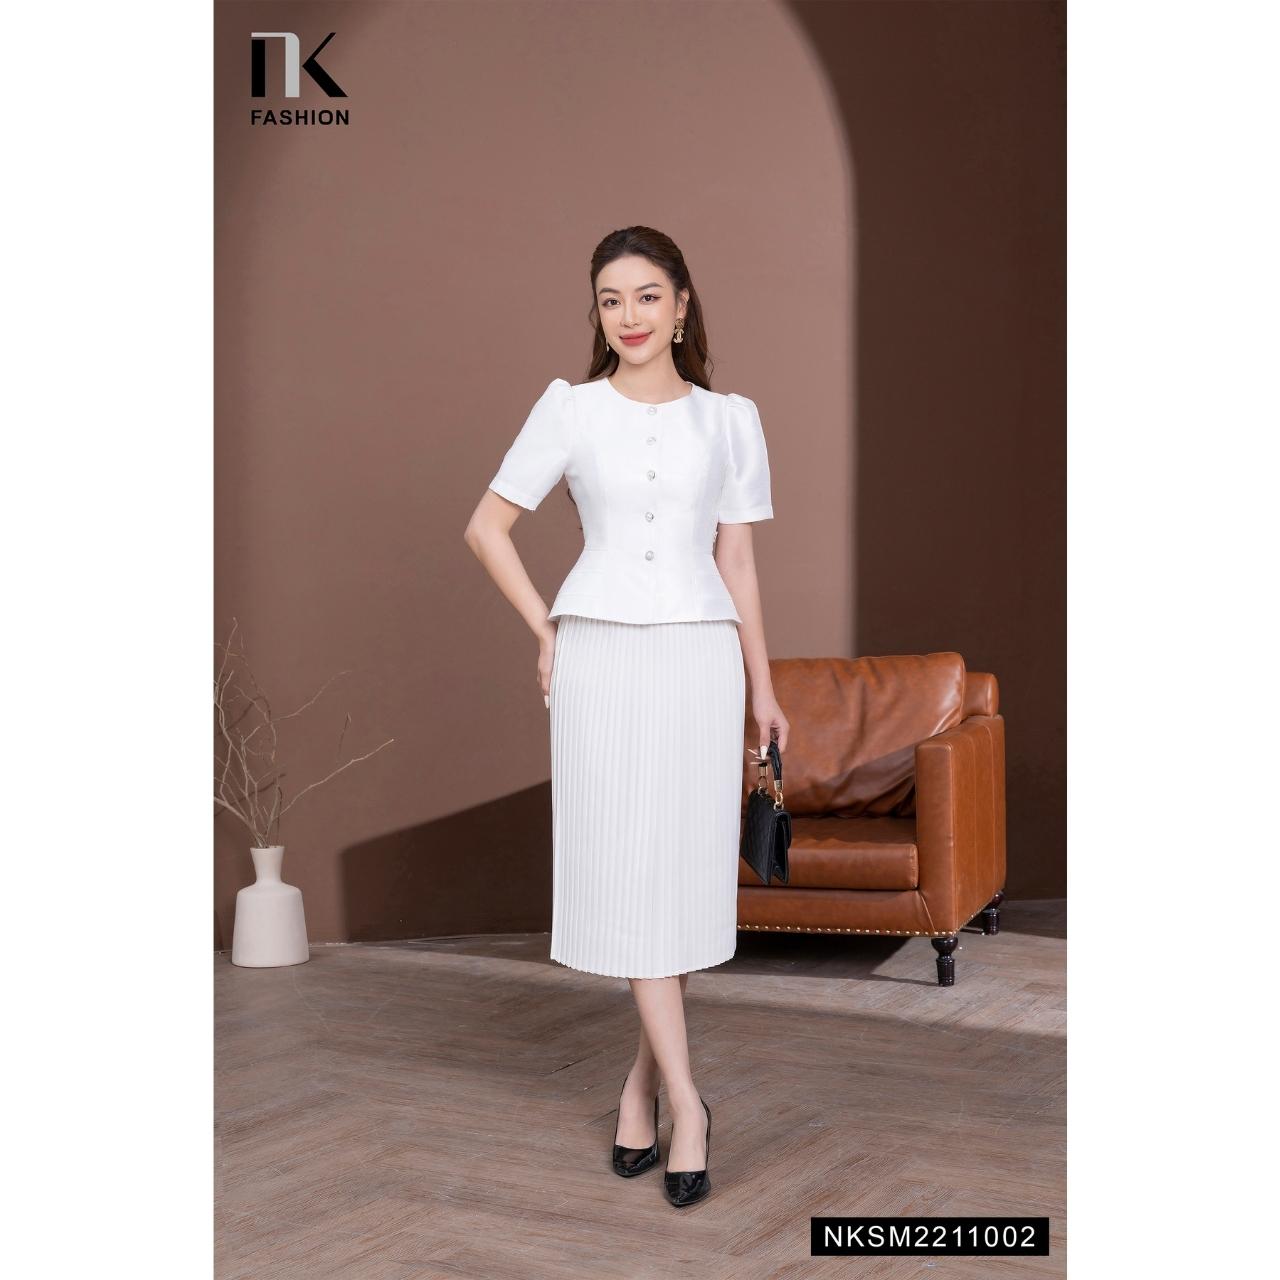 Áo Peplum NK Fashion Thiết Kế Tay Lỡ Chiết Eo Đính Cúc Ngọc Chất Vải Nhập Hàn Cao Cấp NKSM2211002